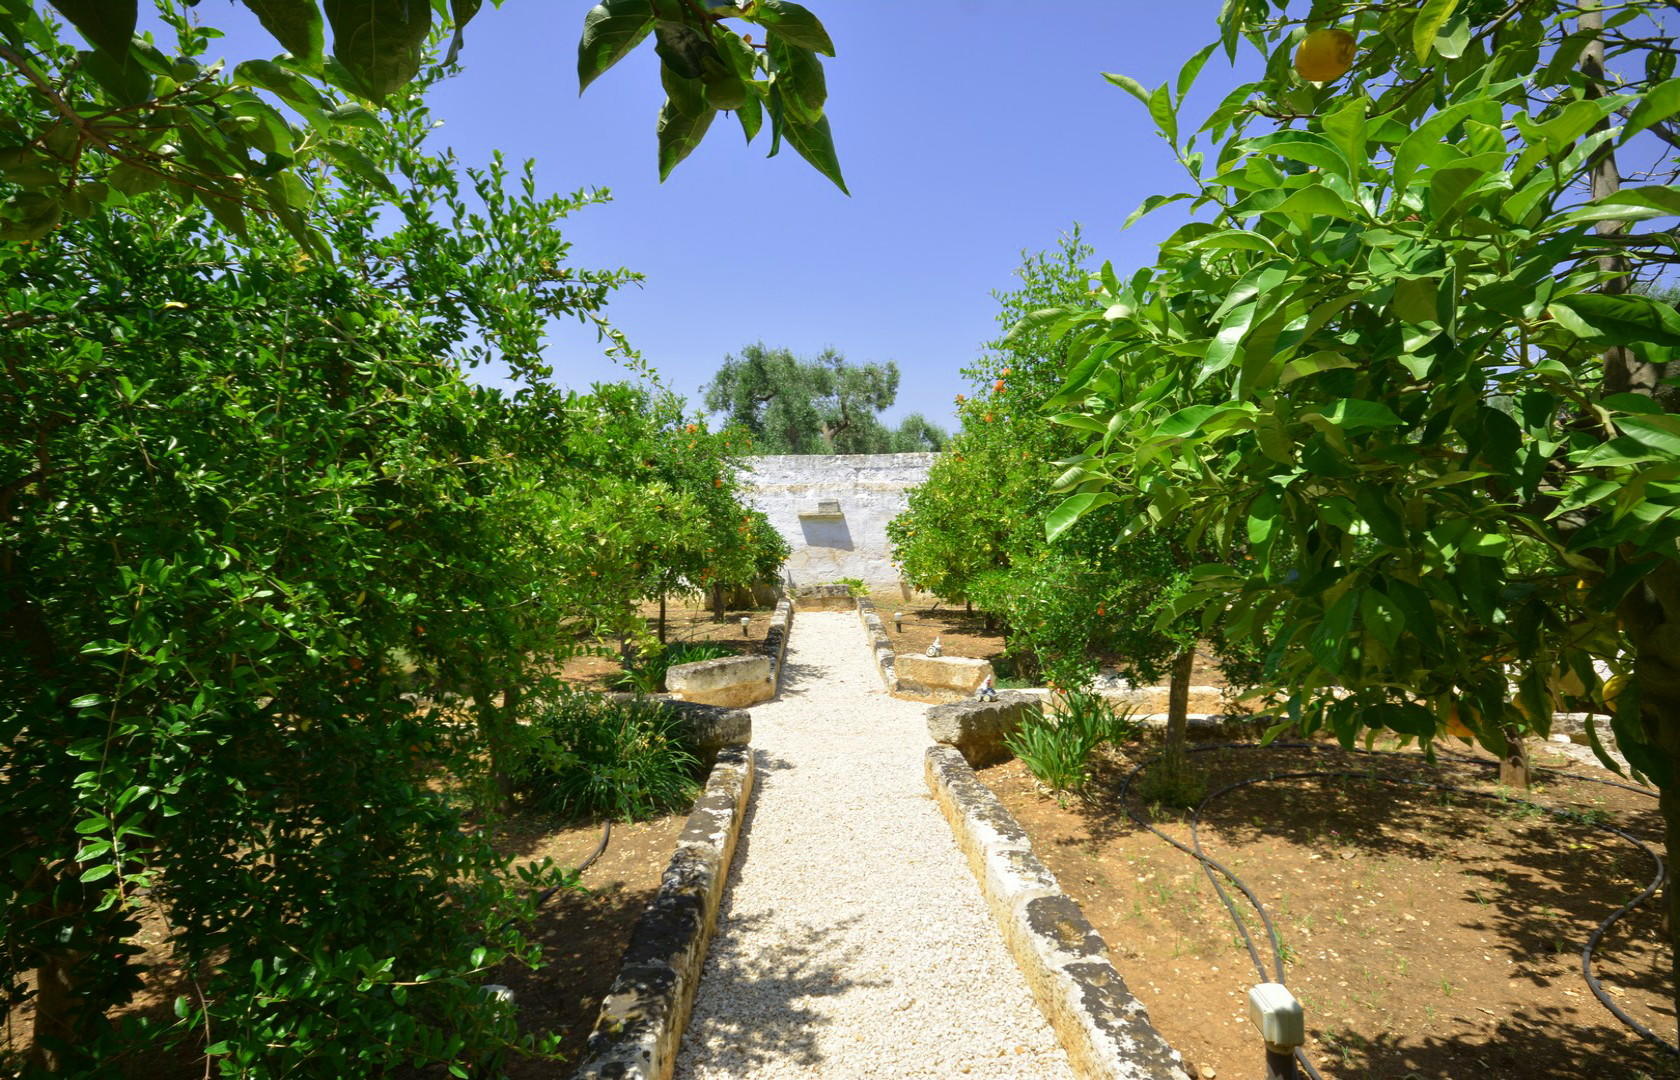 Garden, Citrus grove